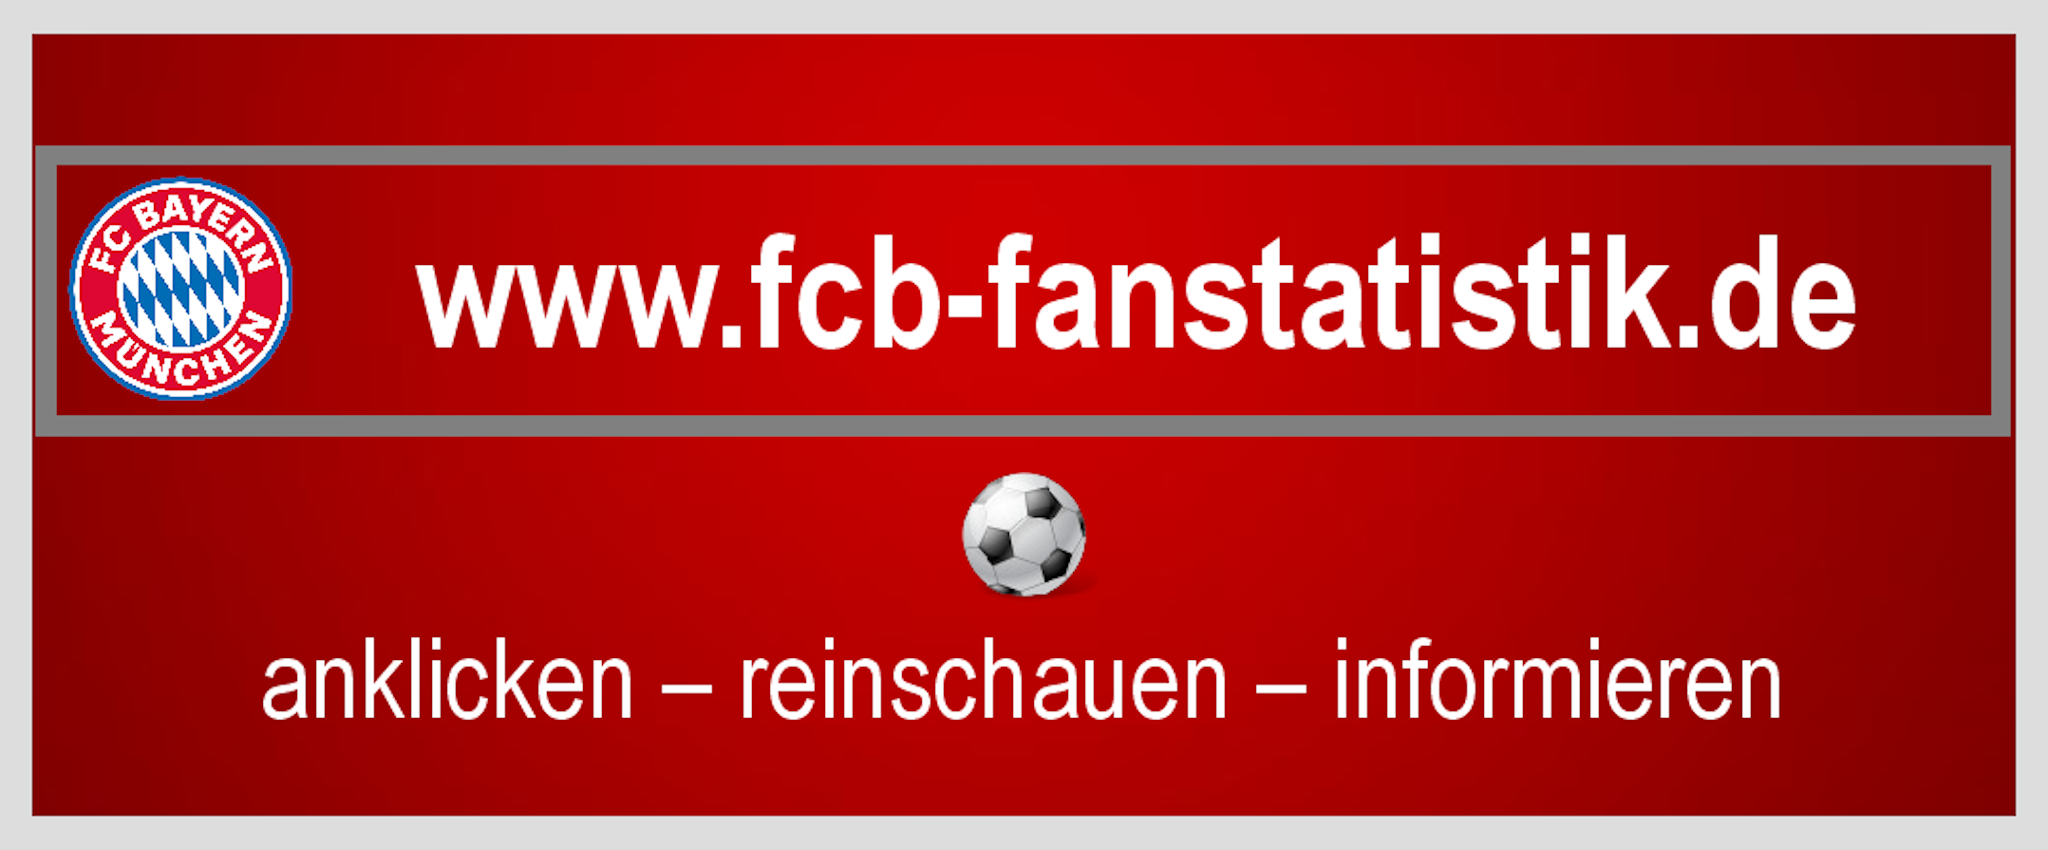 FCB Fanstatistik